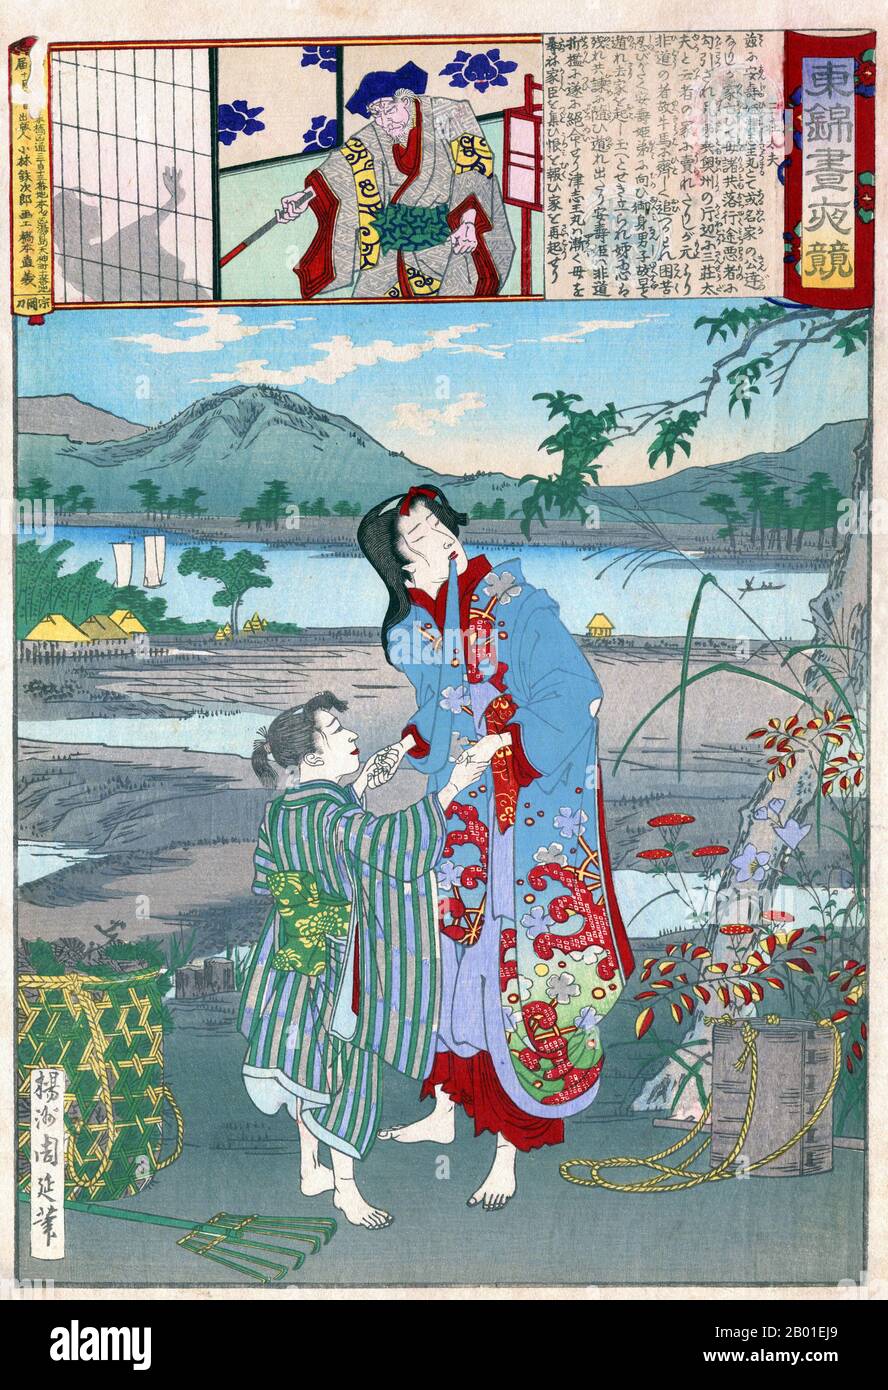 Japan: Yasu-hime und Zushiomaru wurden in die Sklaverei verkauft. Ukiyo-e-Blockdruck von Yoshu Chikanobu (1838-1912), 1886. Sansho Daiyu wurde in die Sklaverei Yasu-hime und Zushiomaru verkauft, die Tochter und der Sohn (hier abgebildet) des Provinzgouverneurs Iwaka Masauji, der gestürzt und verbannt worden war. Iwakas treuer Spender Tatebe Kanamenosuke versuchte, die Kinder zu retten, wurde aber selbst gefangen genommen und zum Tode verurteilt, um im Morgengrauen enthauptet zu werden. Sanshos Tochter Osan verwandelte sich in ein Huhn, als die Sonne am Tag der Hinrichtung aufging und die Seile des Gefangenen abkaute. Stockfoto